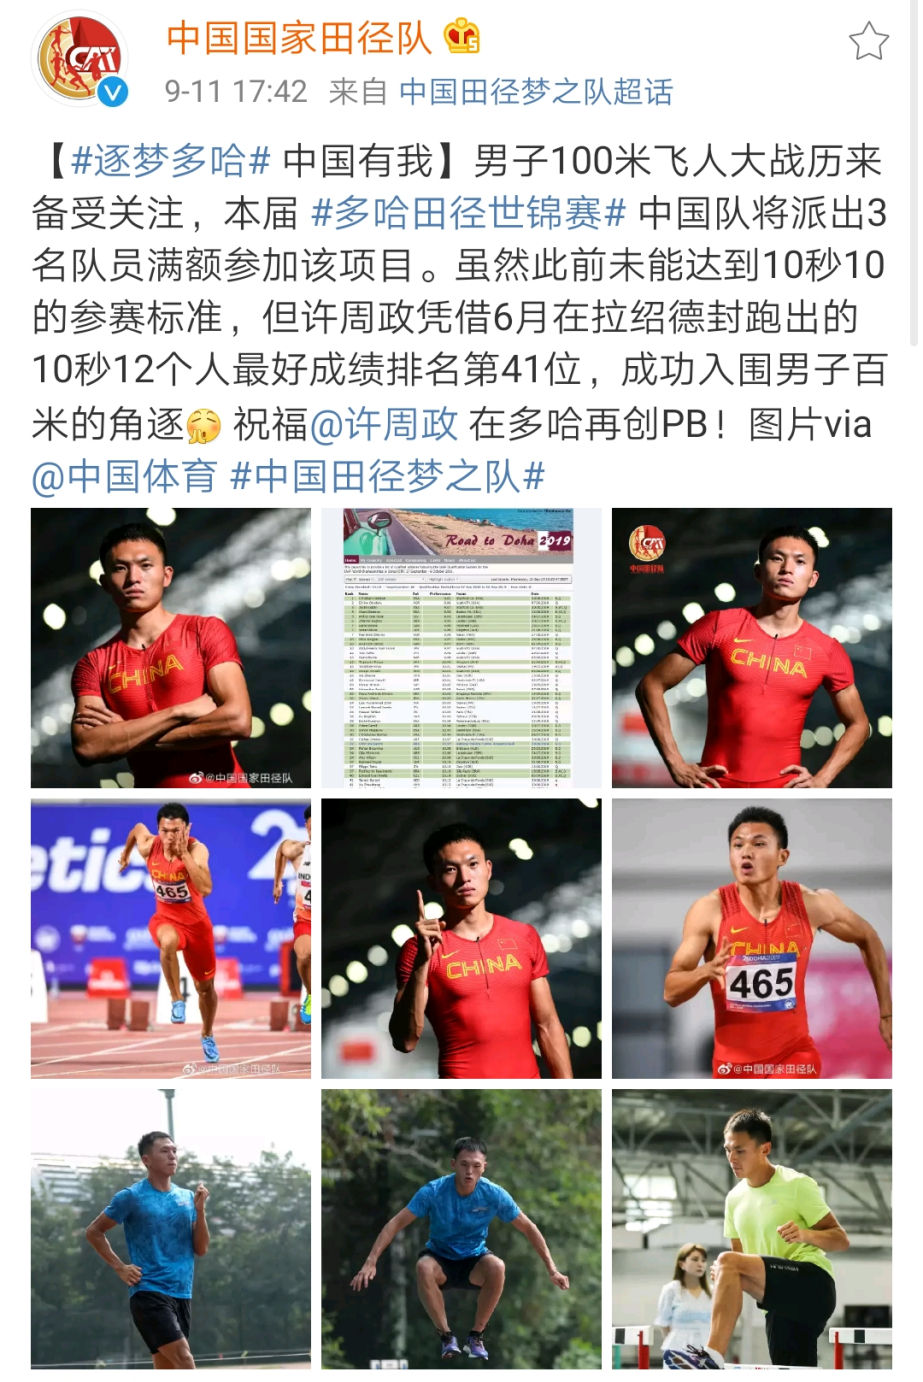 许周政递补世锦赛100米,中国短跑3人出战100米,这就是中国速度